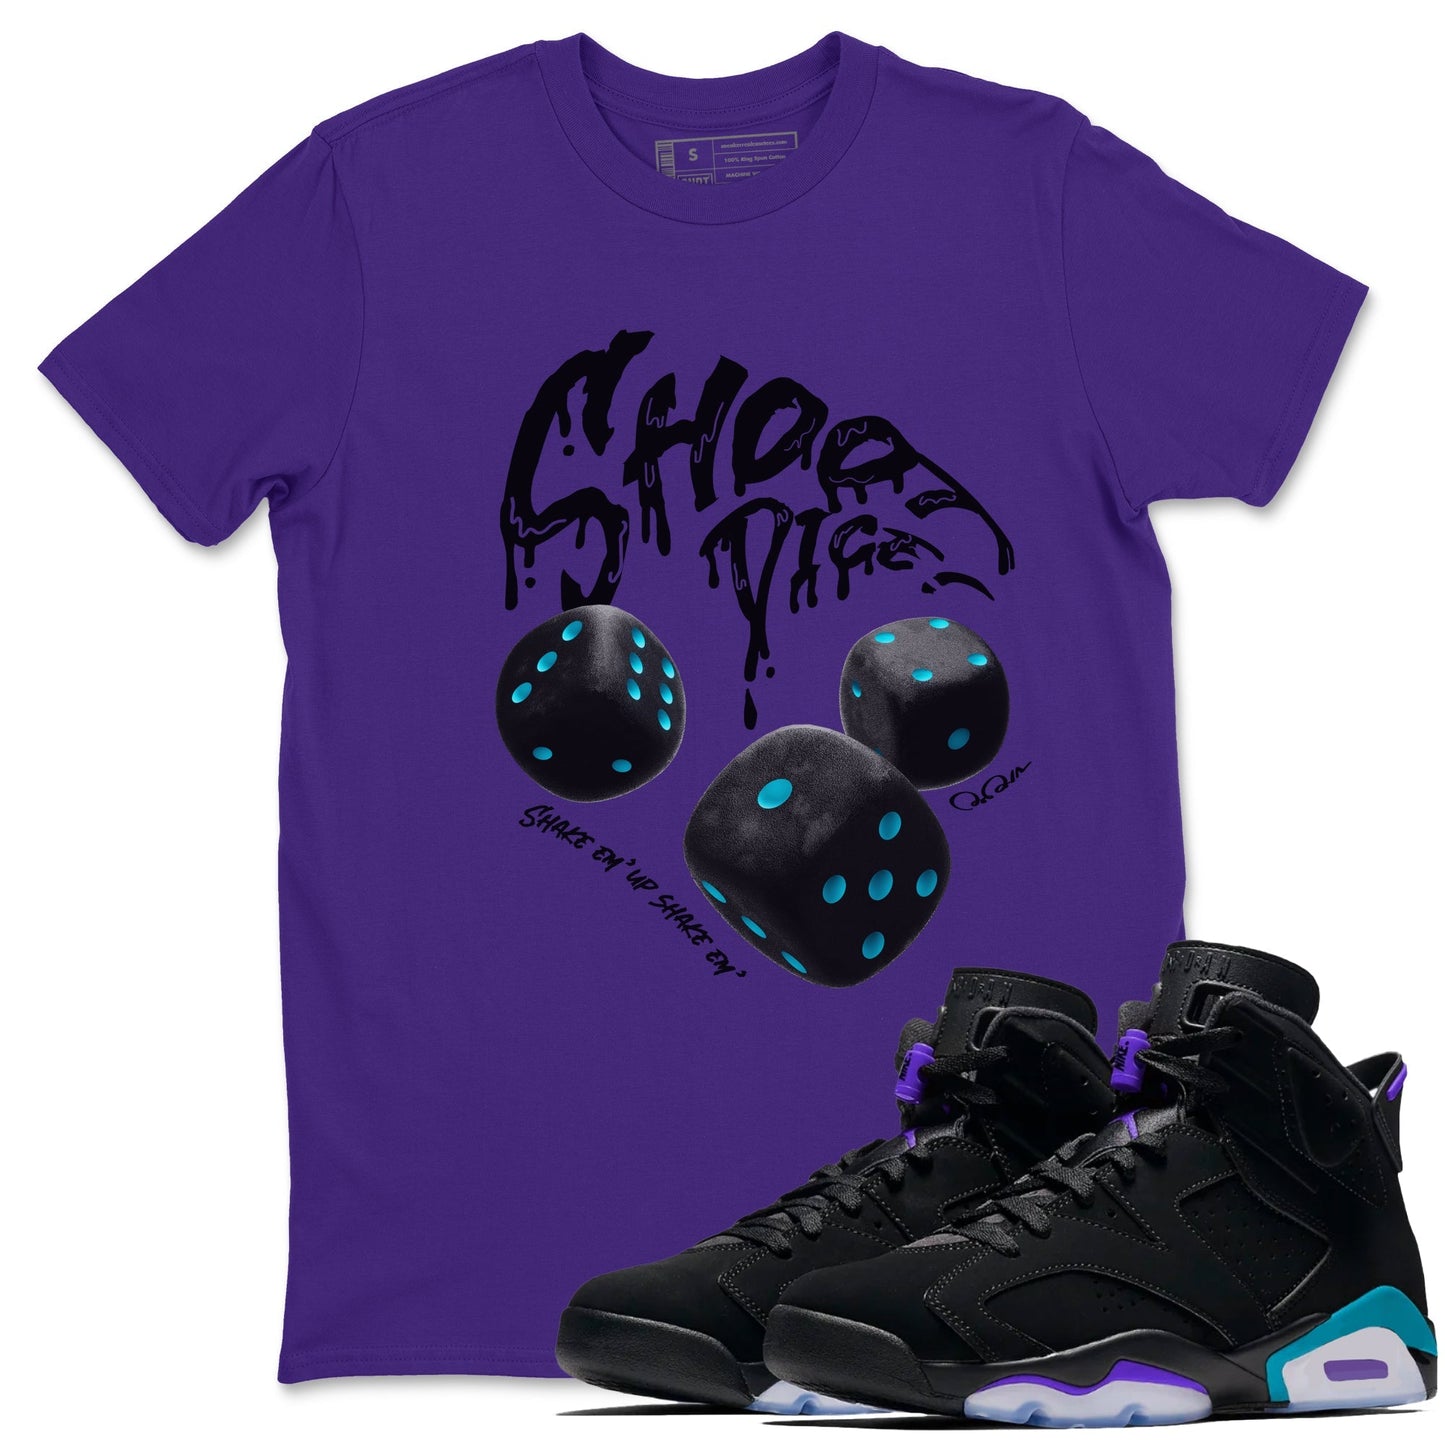 Air Jordan 6 Aqua Sneaker Match Tees Shoot Dice Sneaker Tees AJ6 Aqua Sneaker Release Tees Unisex Shirts Purple 1